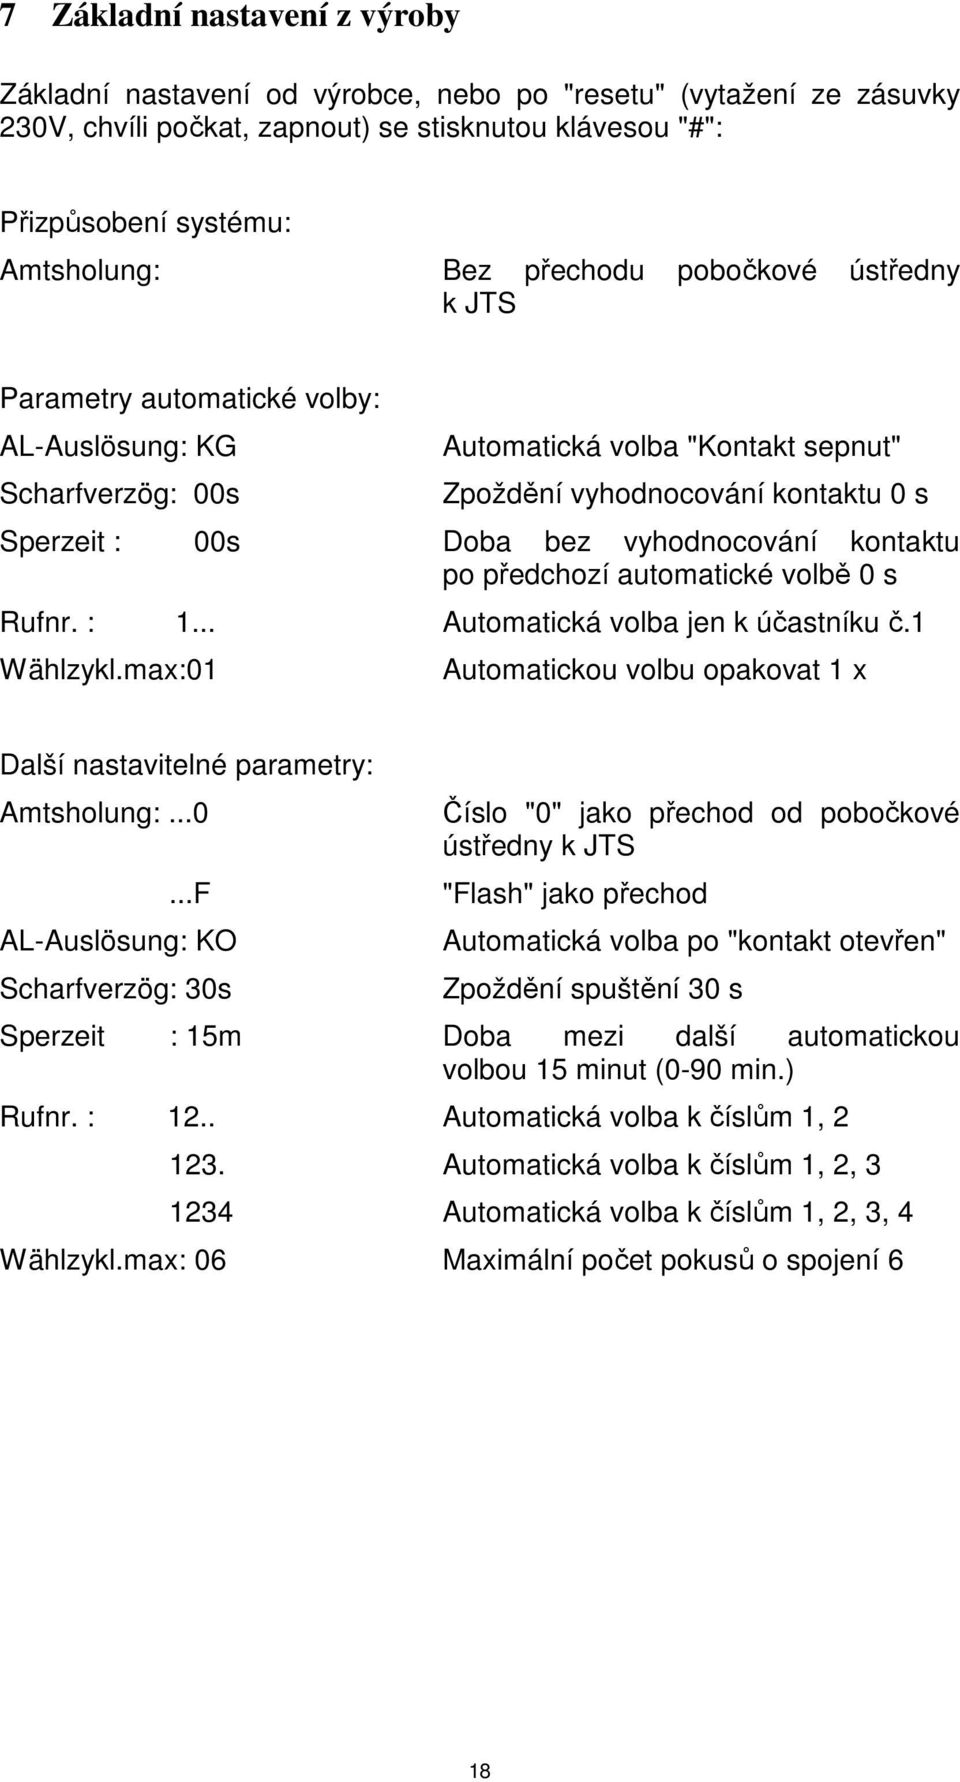 vyhodnocování kontaktu po předchozí automatické volbě 0 s Rufnr. : 1... Automatická volba jen k účastníku č.1 Wählzykl.max:01 Automatickou volbu opakovat 1 x Další nastavitelné parametry: Amtsholung:.